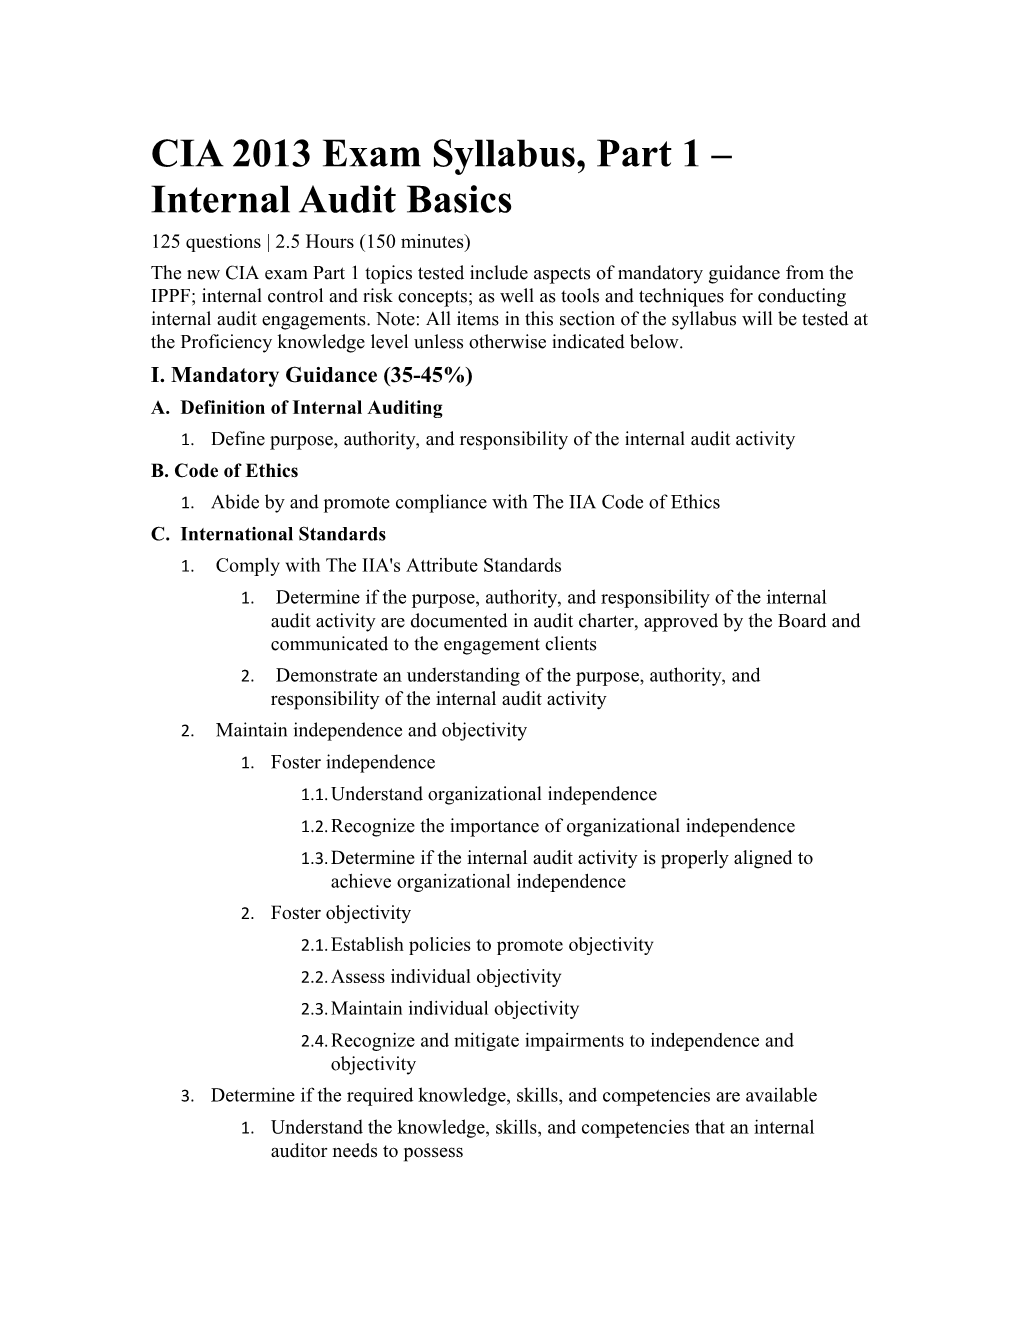 CIA 2013 Exam Syllabus, Part 1 Internal Audit Basics